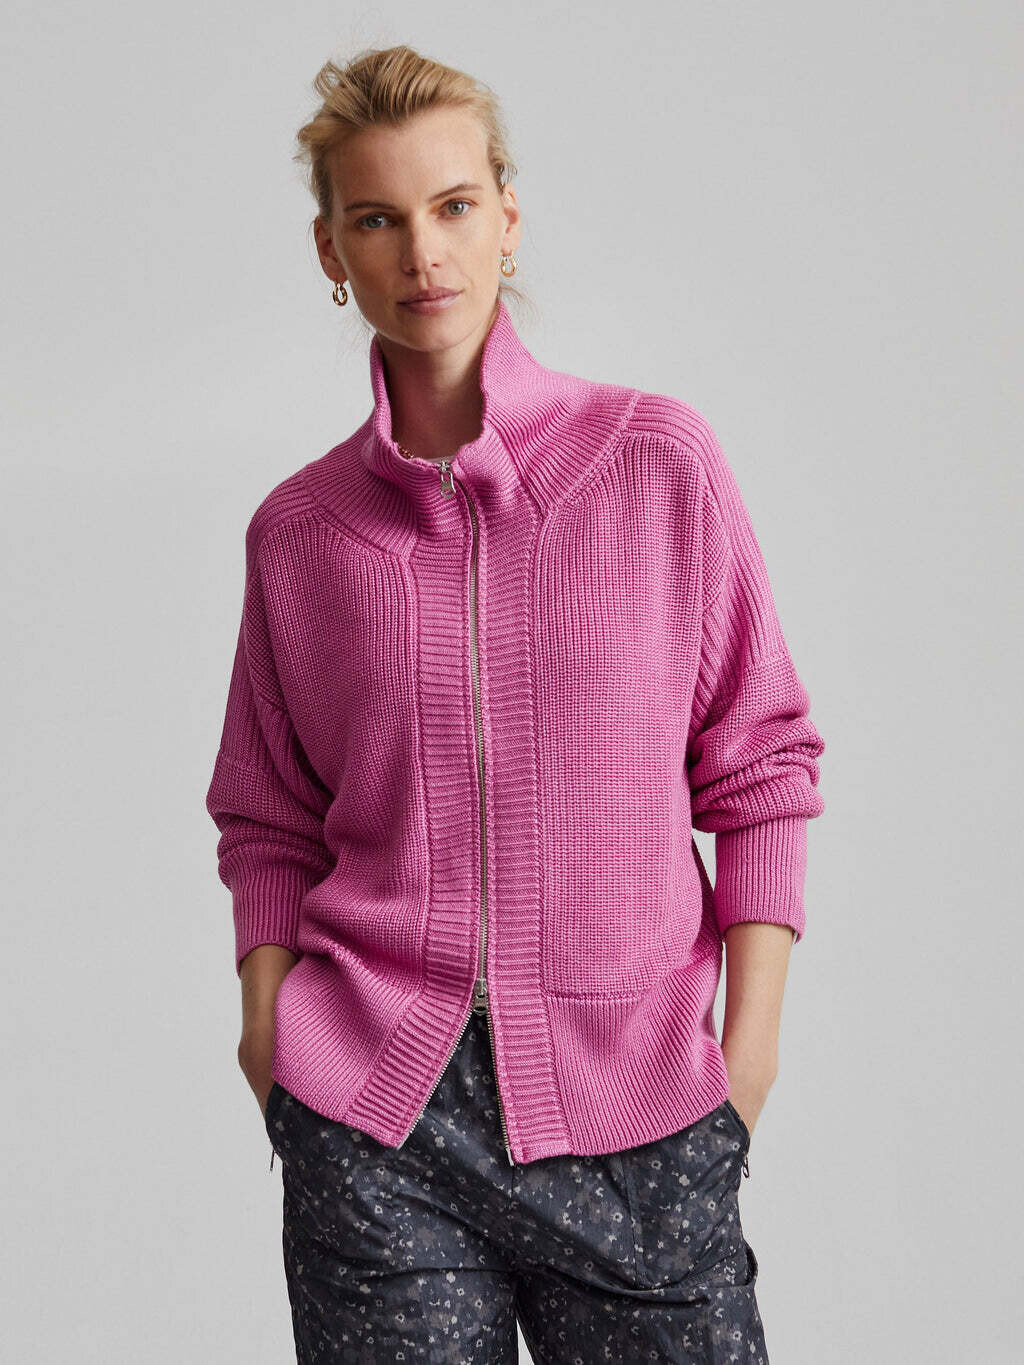 Varley, Whitney Knit Jacket, Metallic Super Pink